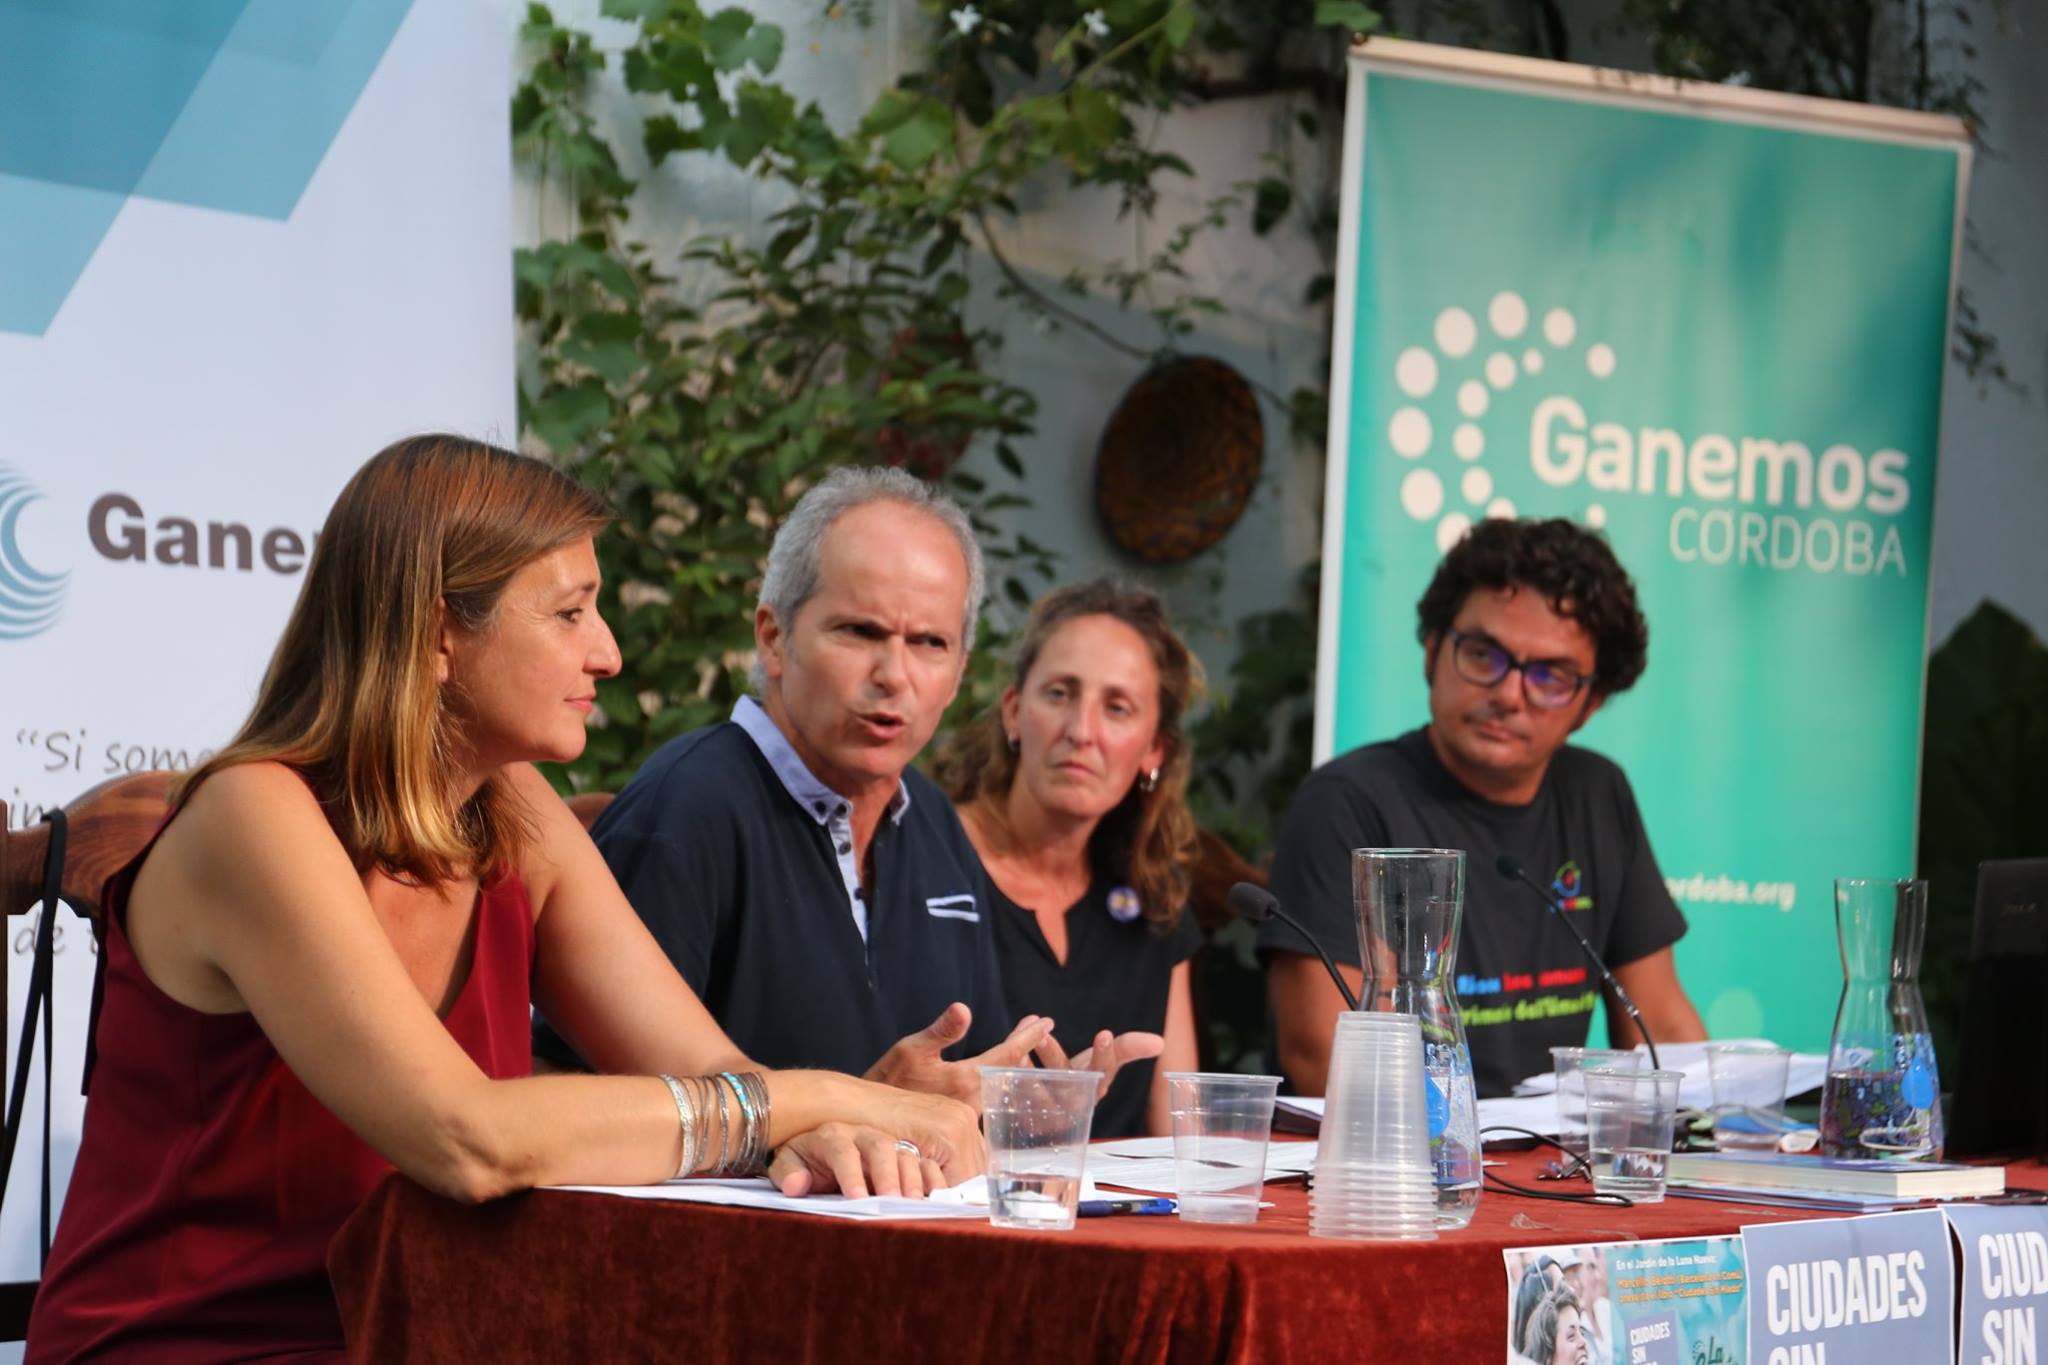 Rafael Blázquez, de Ganemos Córdoba presentando 'Ciudades sin miedo' en Jerez junto a miembros de Barcelona en Comú y Ganemos Jerez.